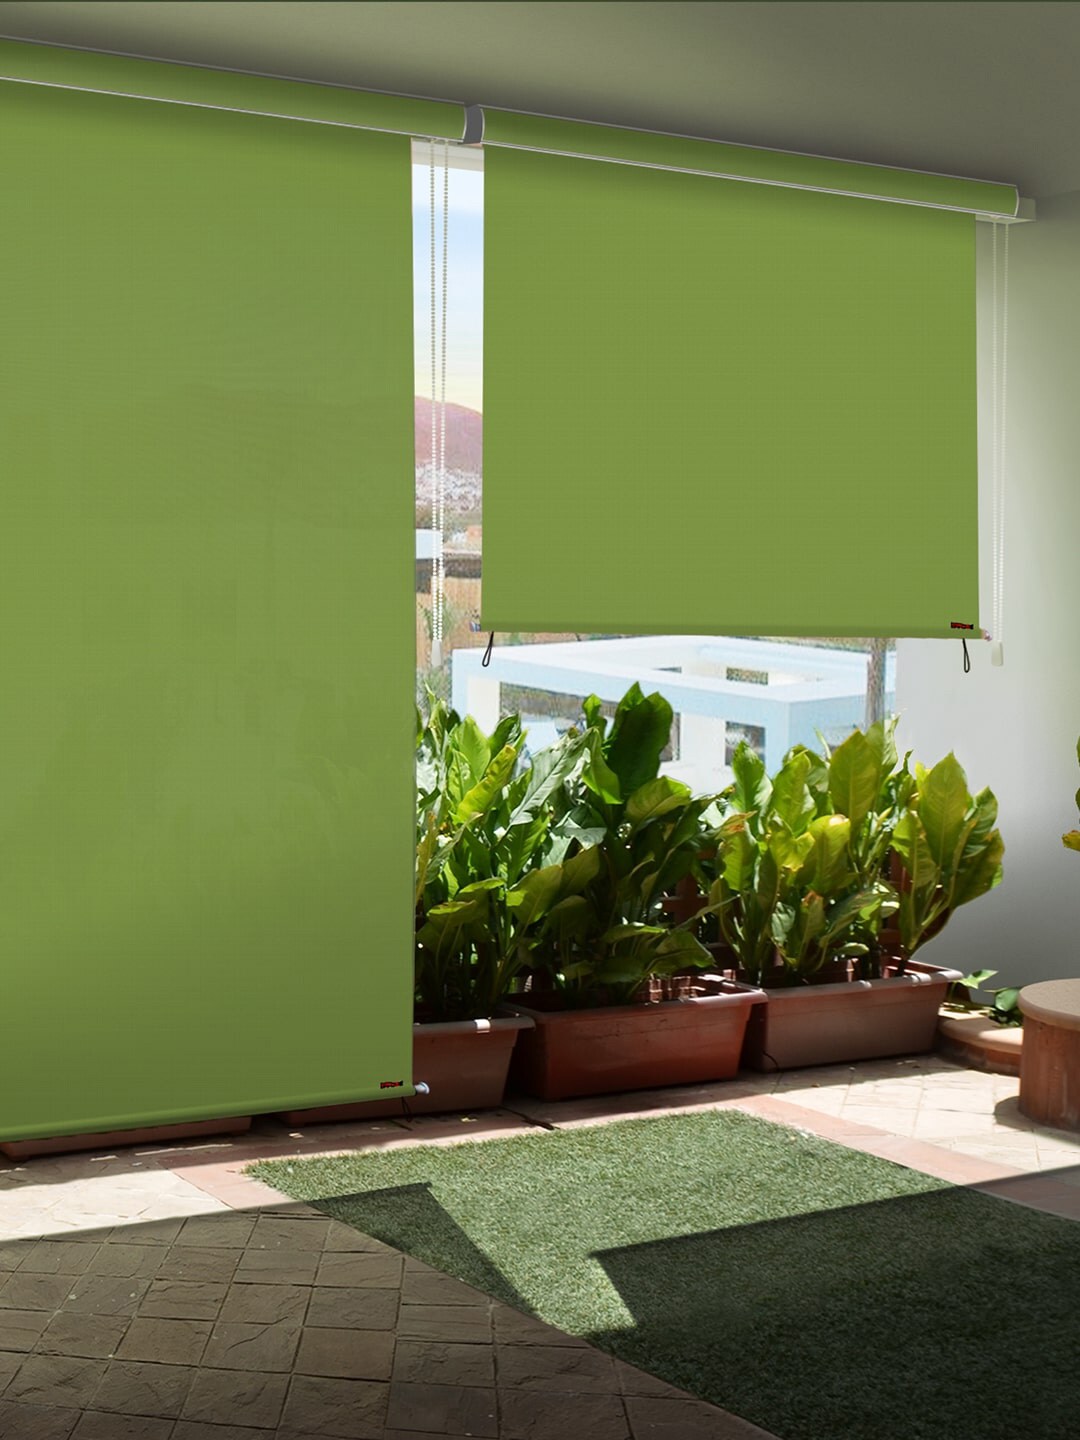 Hippo Green Room Darkening Waterproof Window Blinds Price in India